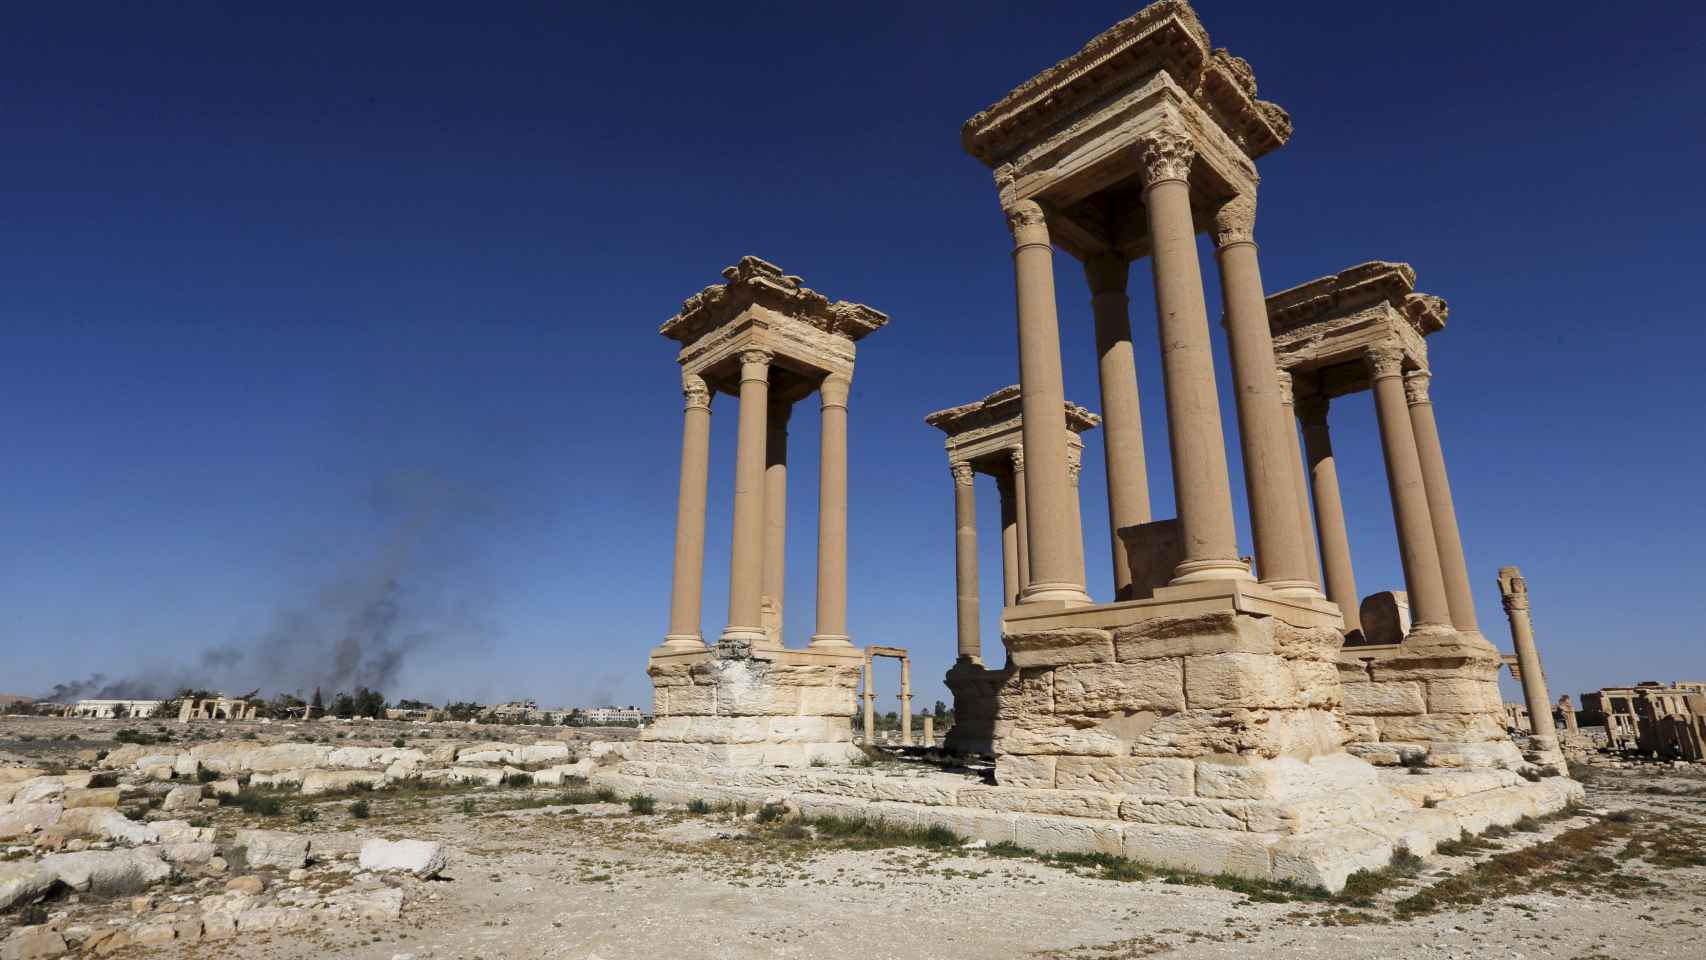 Ruinas de la ciudad histórica de Palmira, con humo al fondo en la ciudad moderna.